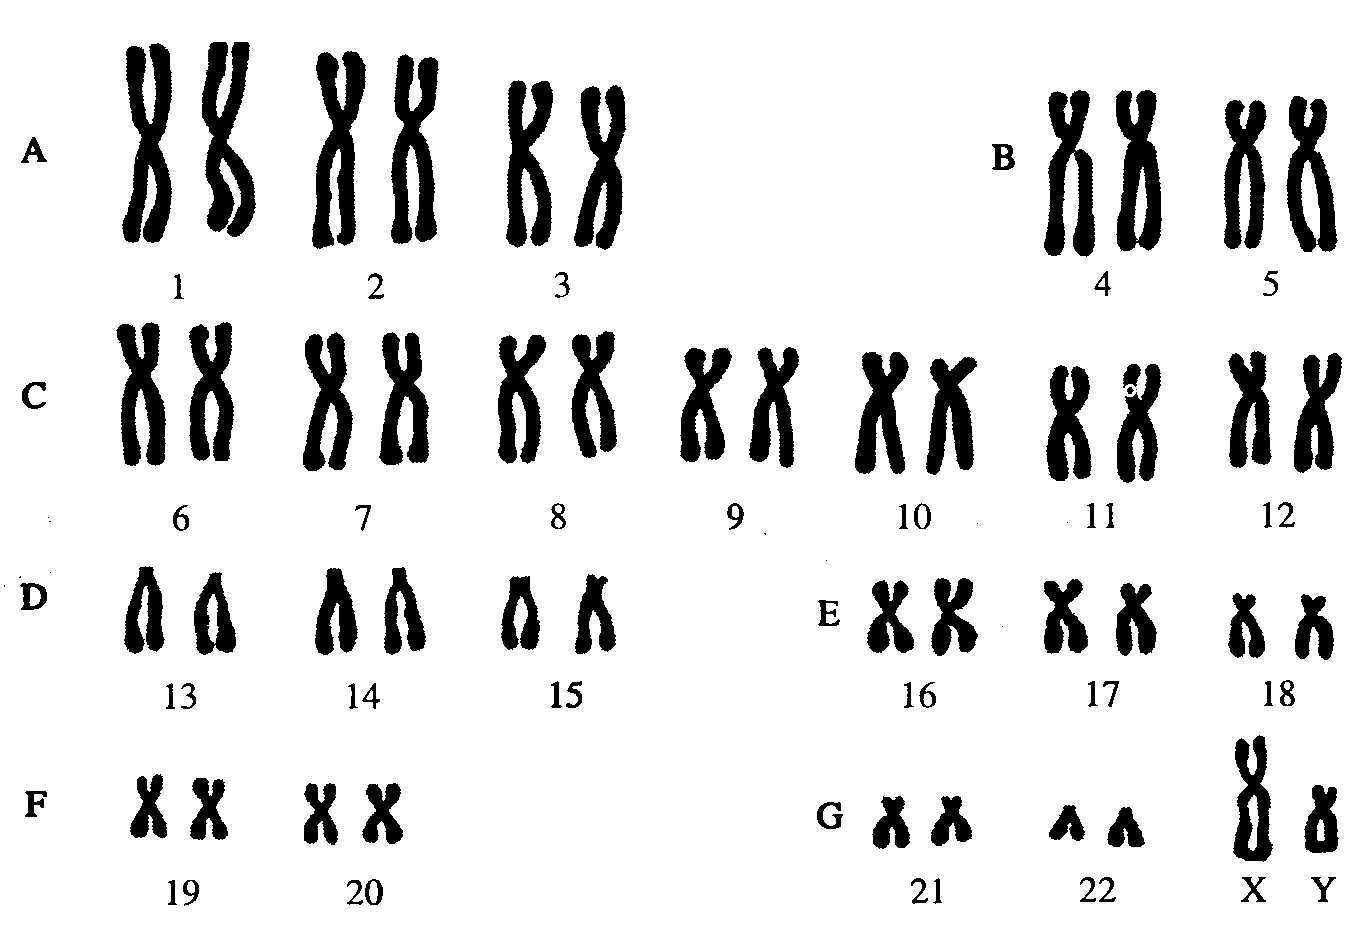 Хромосомы группы г. Кариотип человека Денверская классификация хромосом. Кариотип человека классификация хромосом человека. Нормальный кариотип человека 46 хромосом. Кариограмма хромосом здорового человека.